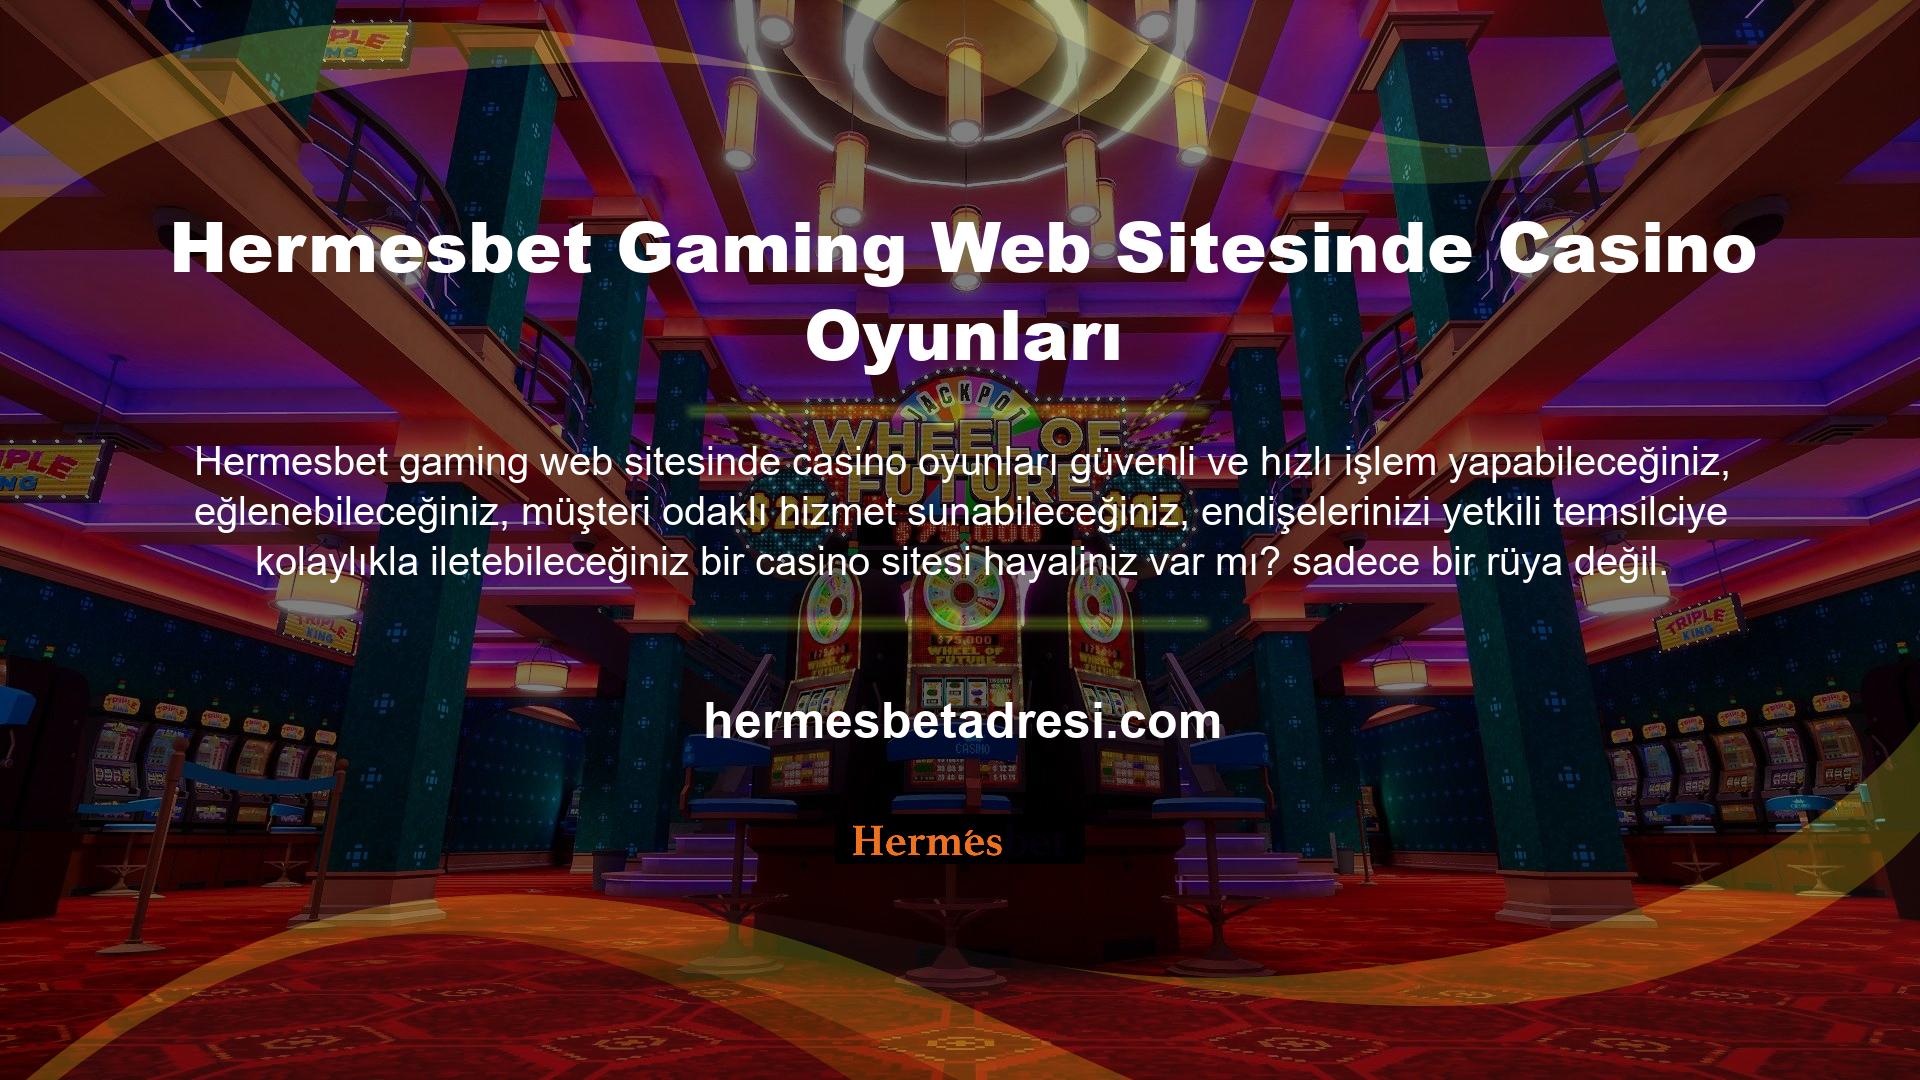 Hermesbet, alanında başarılı olan ve alanında herkes tarafından bilinen başarılı bir web sitesi olarak tanınmaktadır